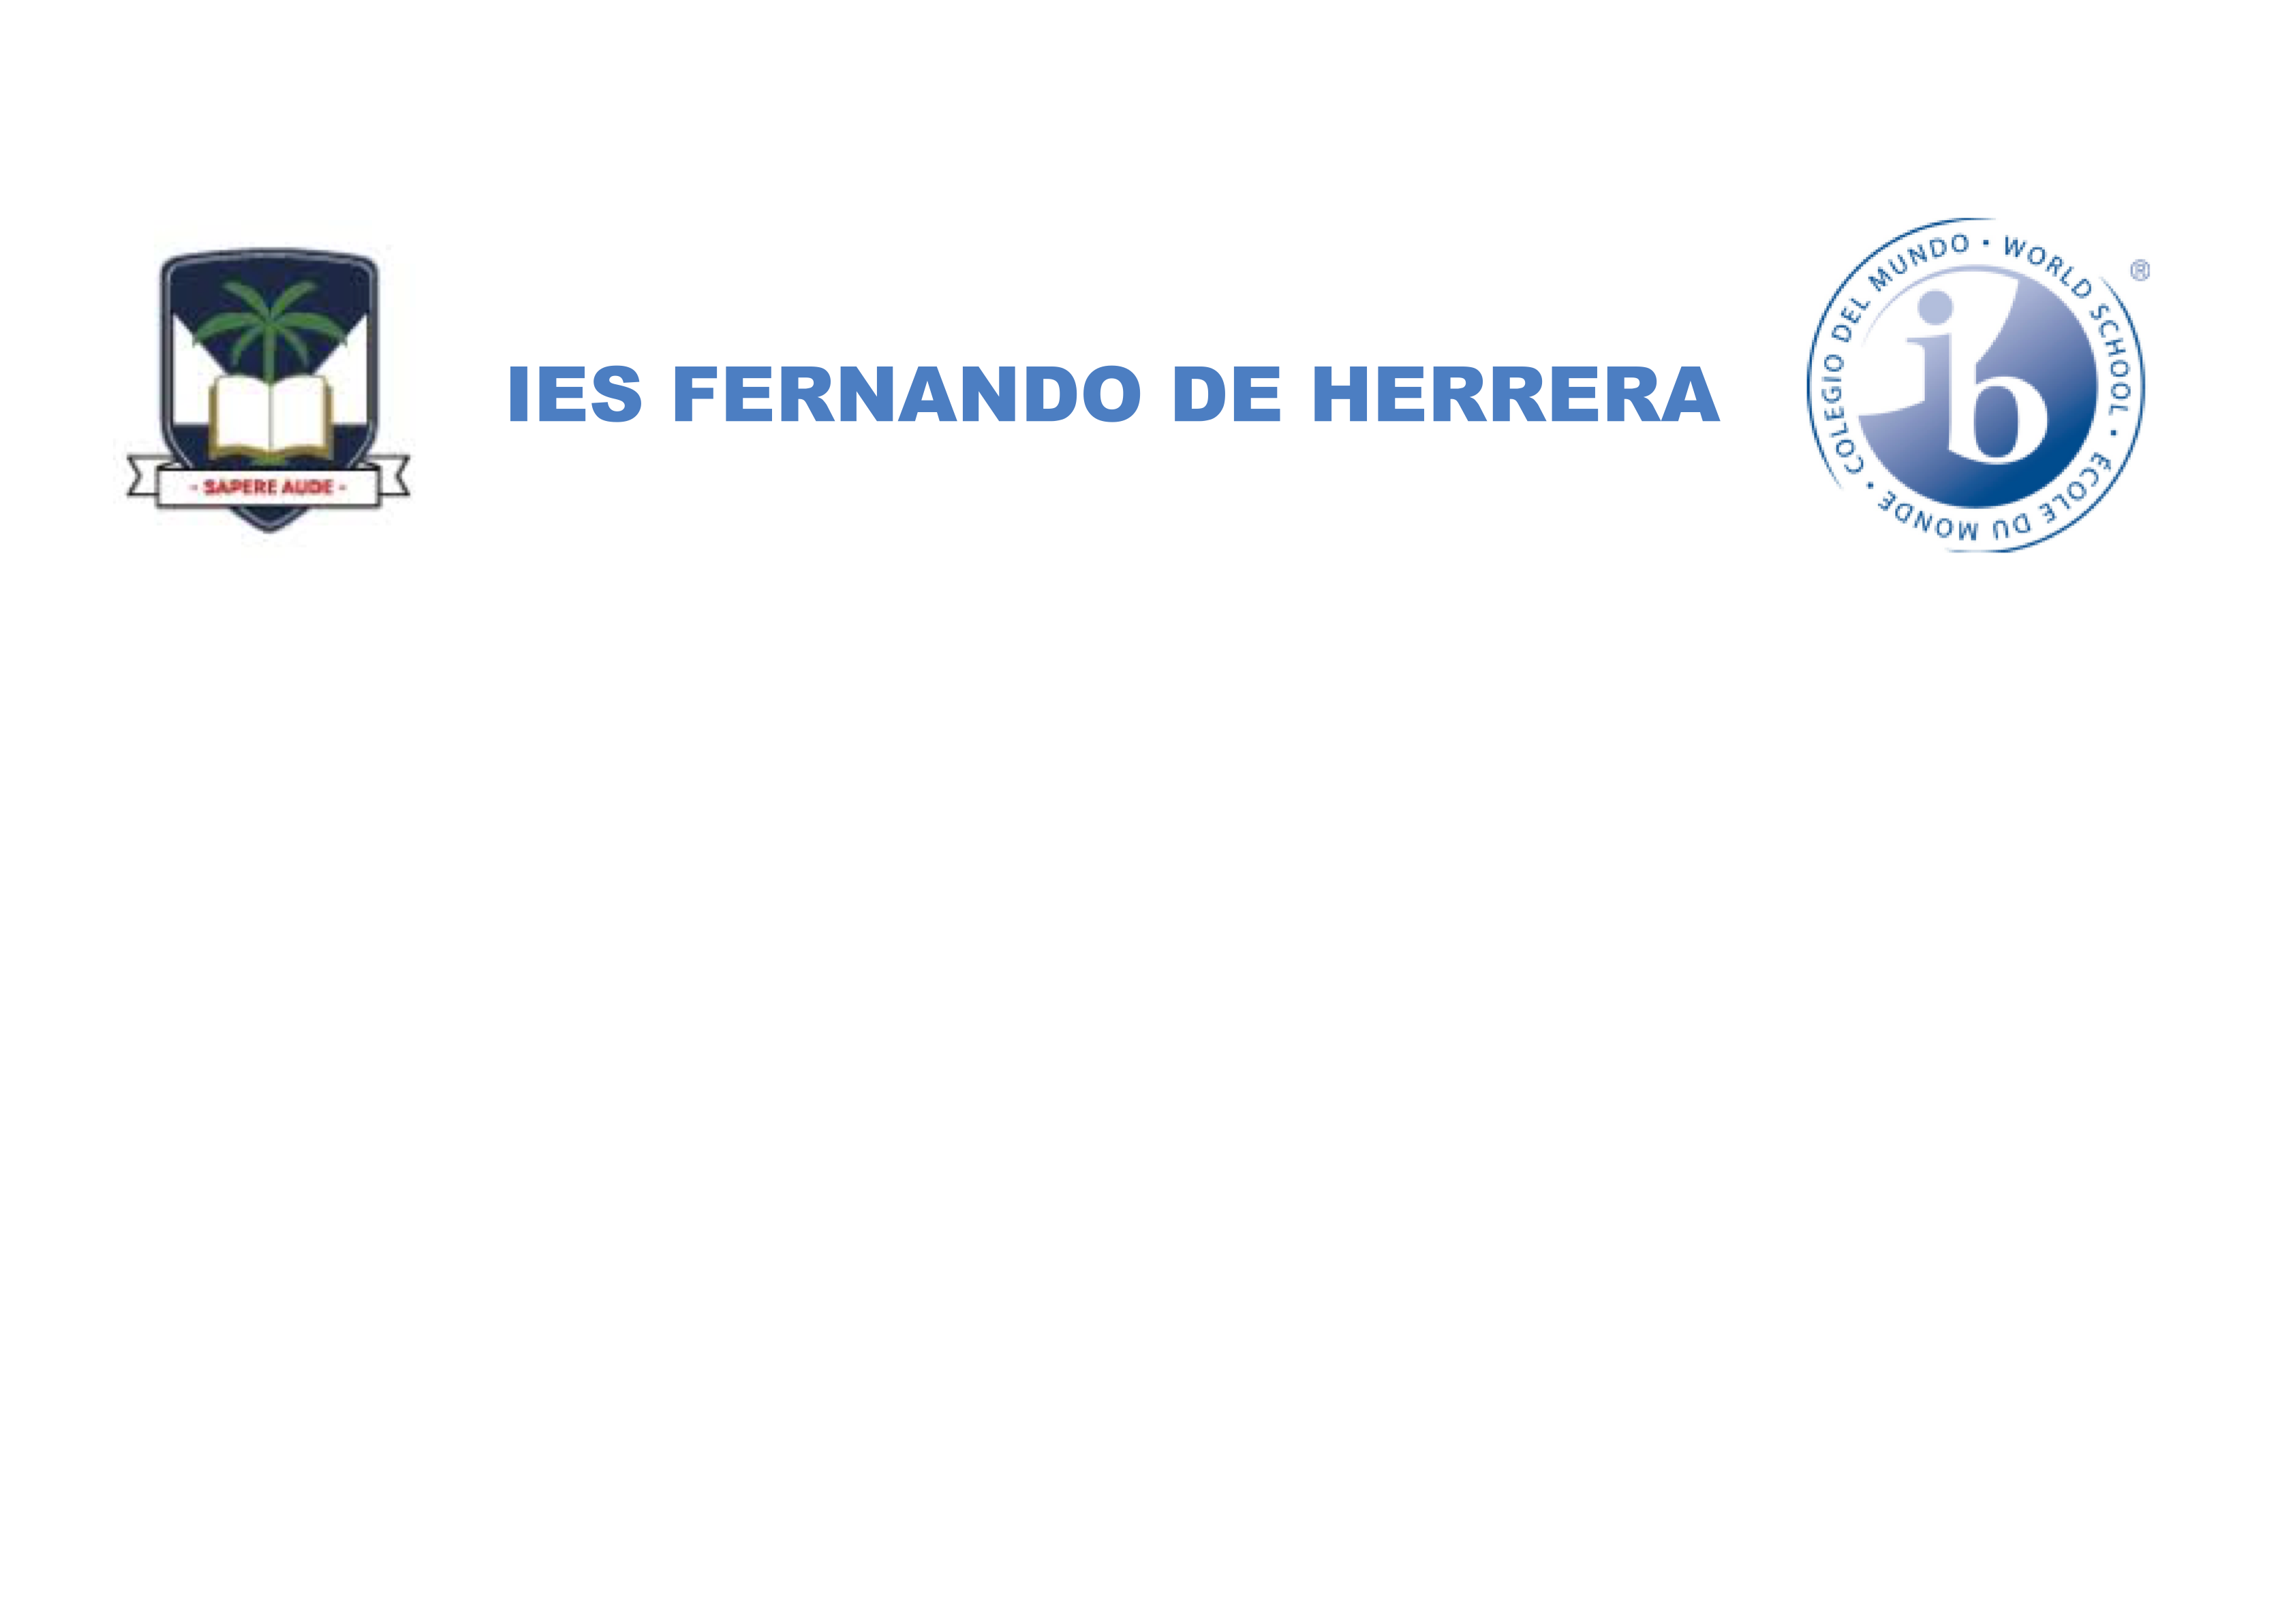 IES Fernando de Herrera – Sevilla